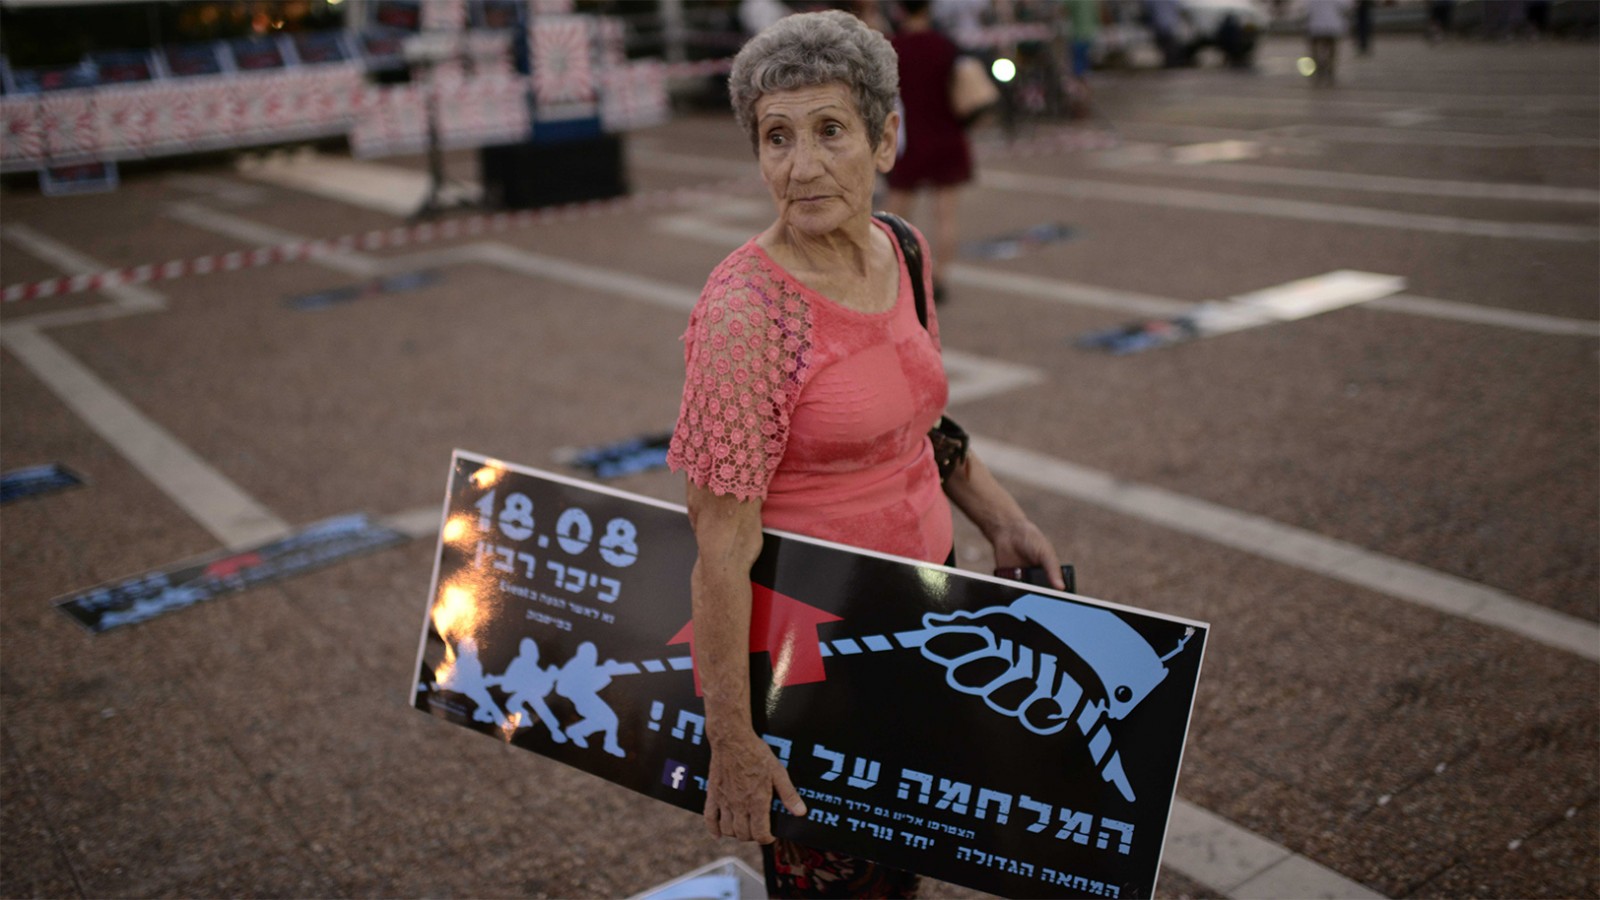 אישה בהפגנת נגד עליית מחירי הדיור בתל אביב באוגוסט 2016 (צילום: תומר ניוברג/ פלאש 90).